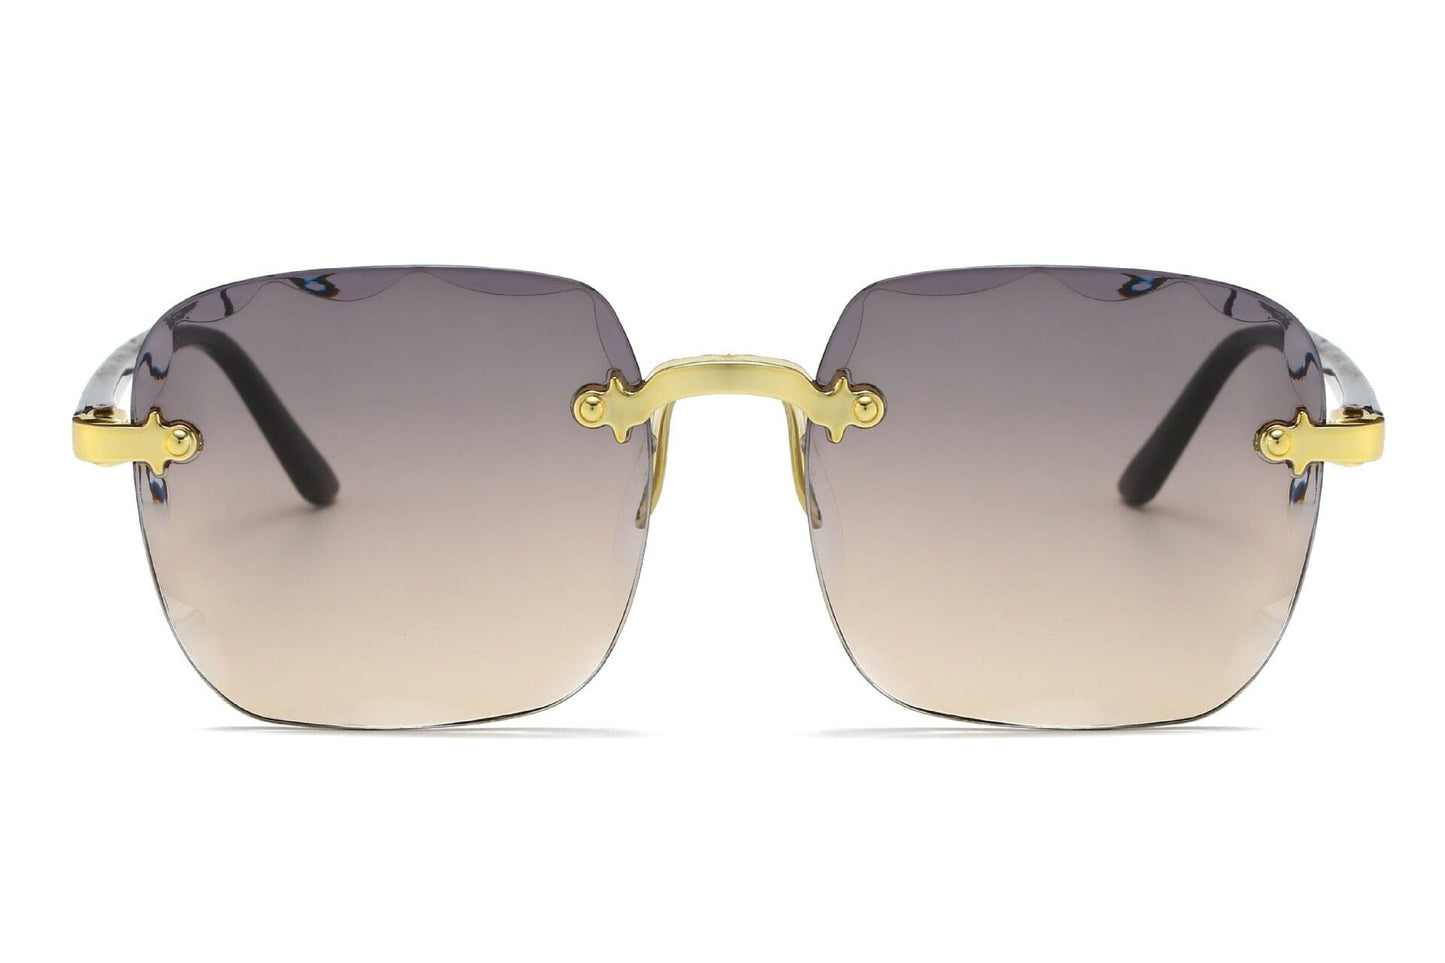 American Women's Rimless Square Sunglasses